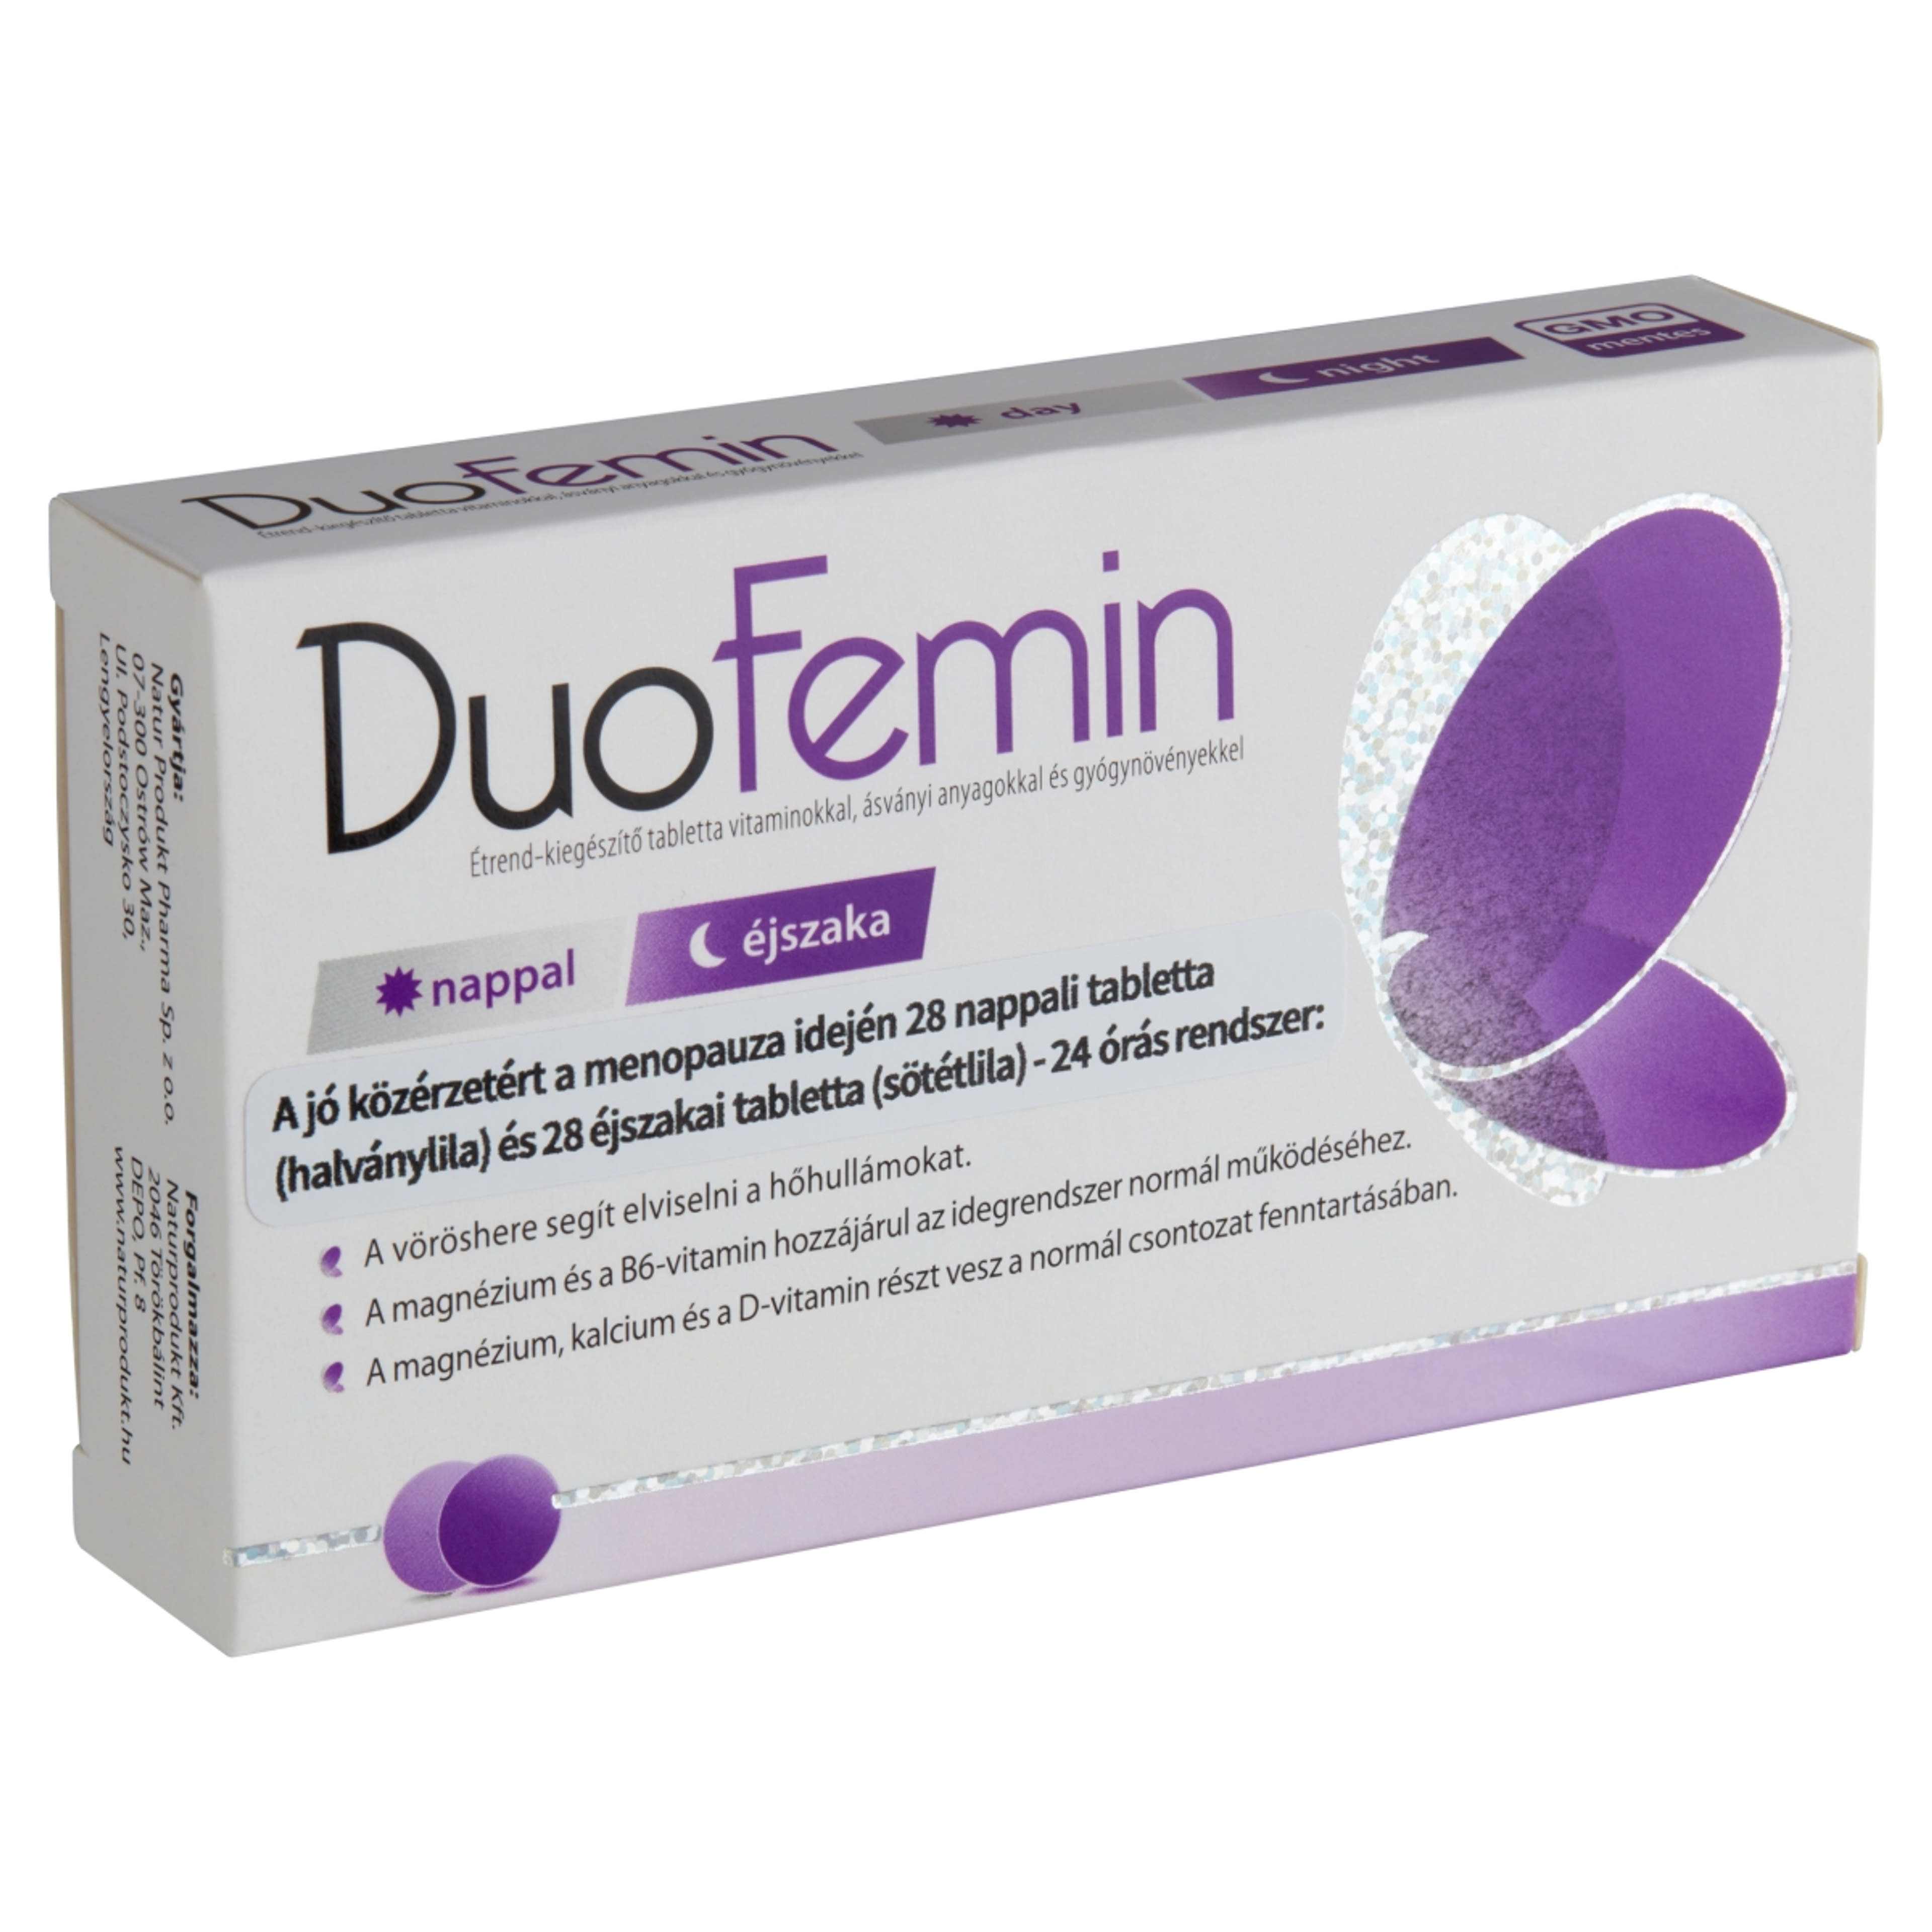 Duofenim Étrendkiegészítő Vitaminokal Tabletta (2x28db) - 54 db-4